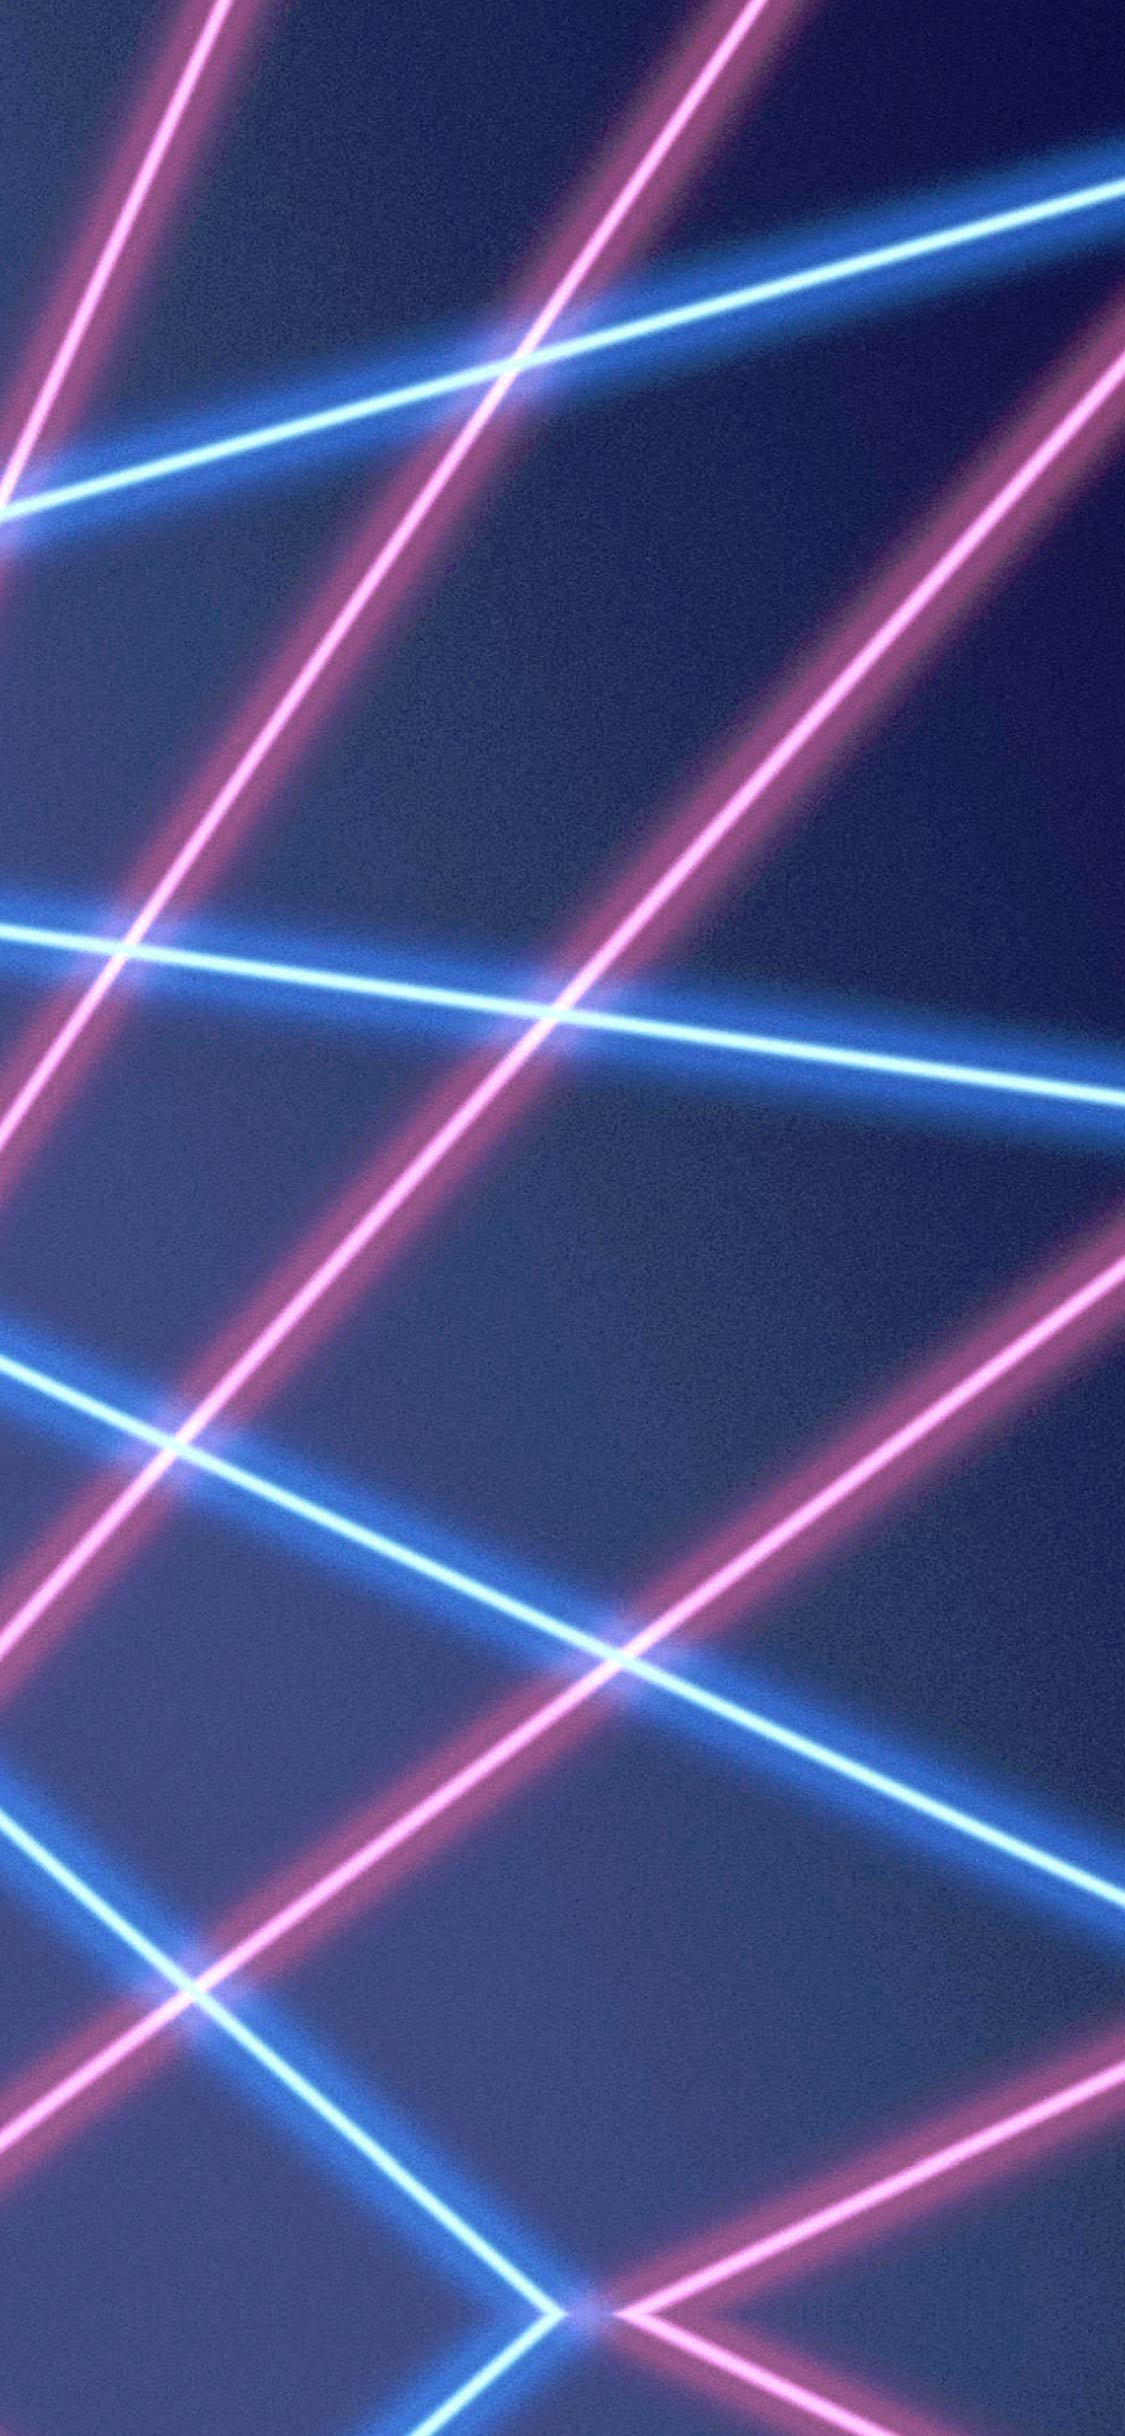 phone wallpaper displaying sweet lasers!